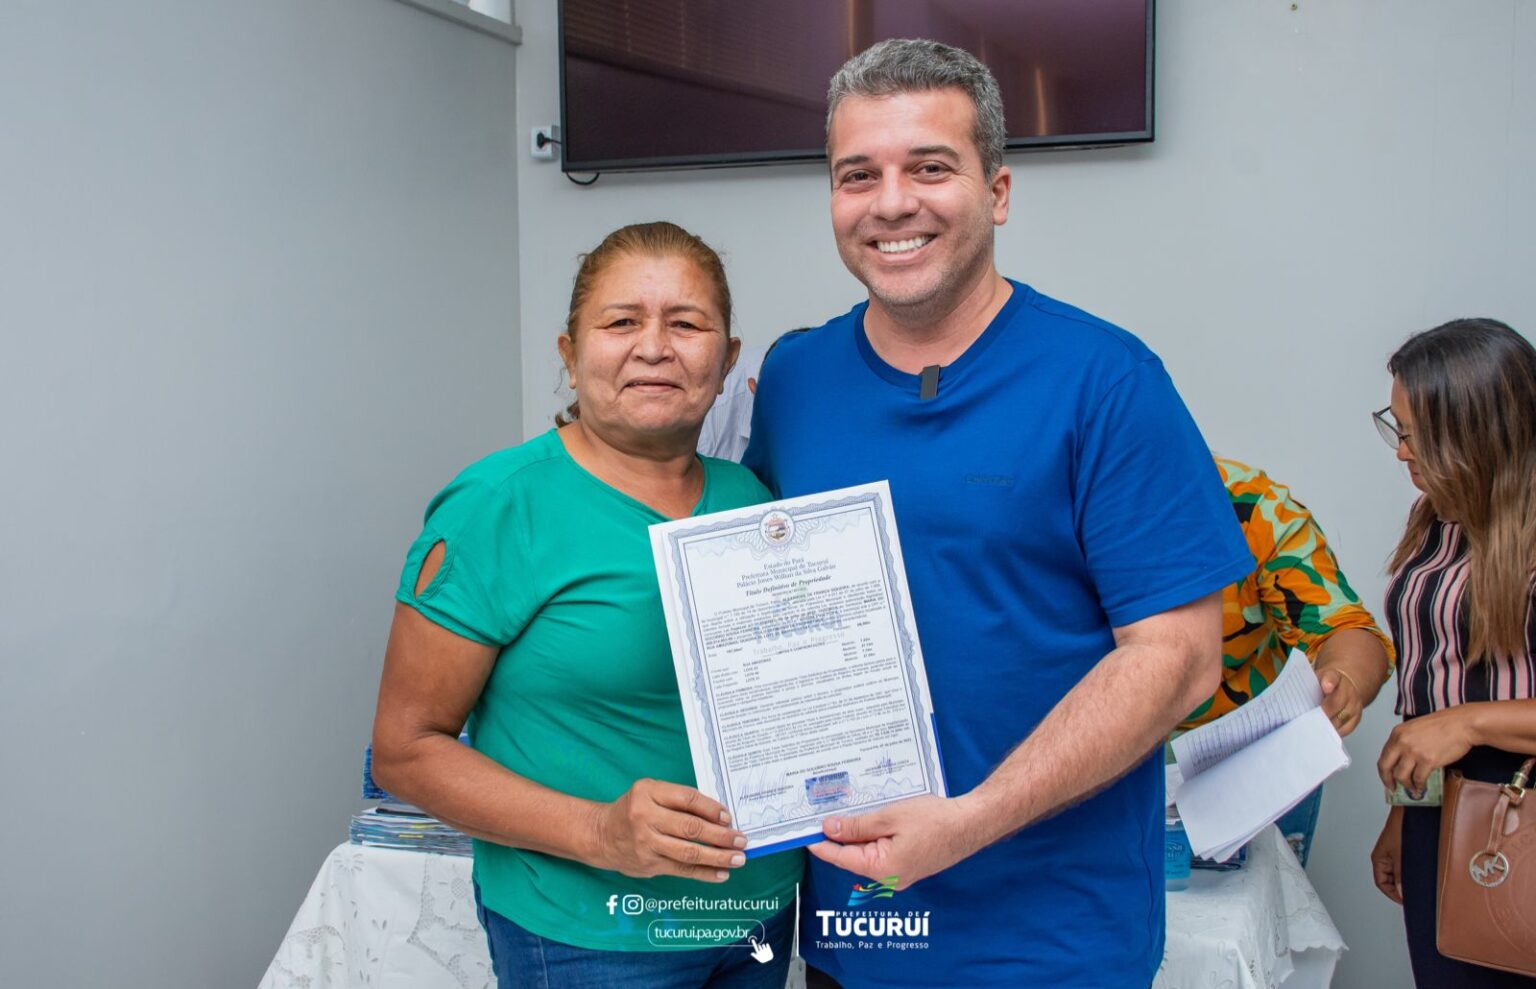 Prefeitura de Tucuruí entrega títulos definitivos para moradores do Bairro Getat